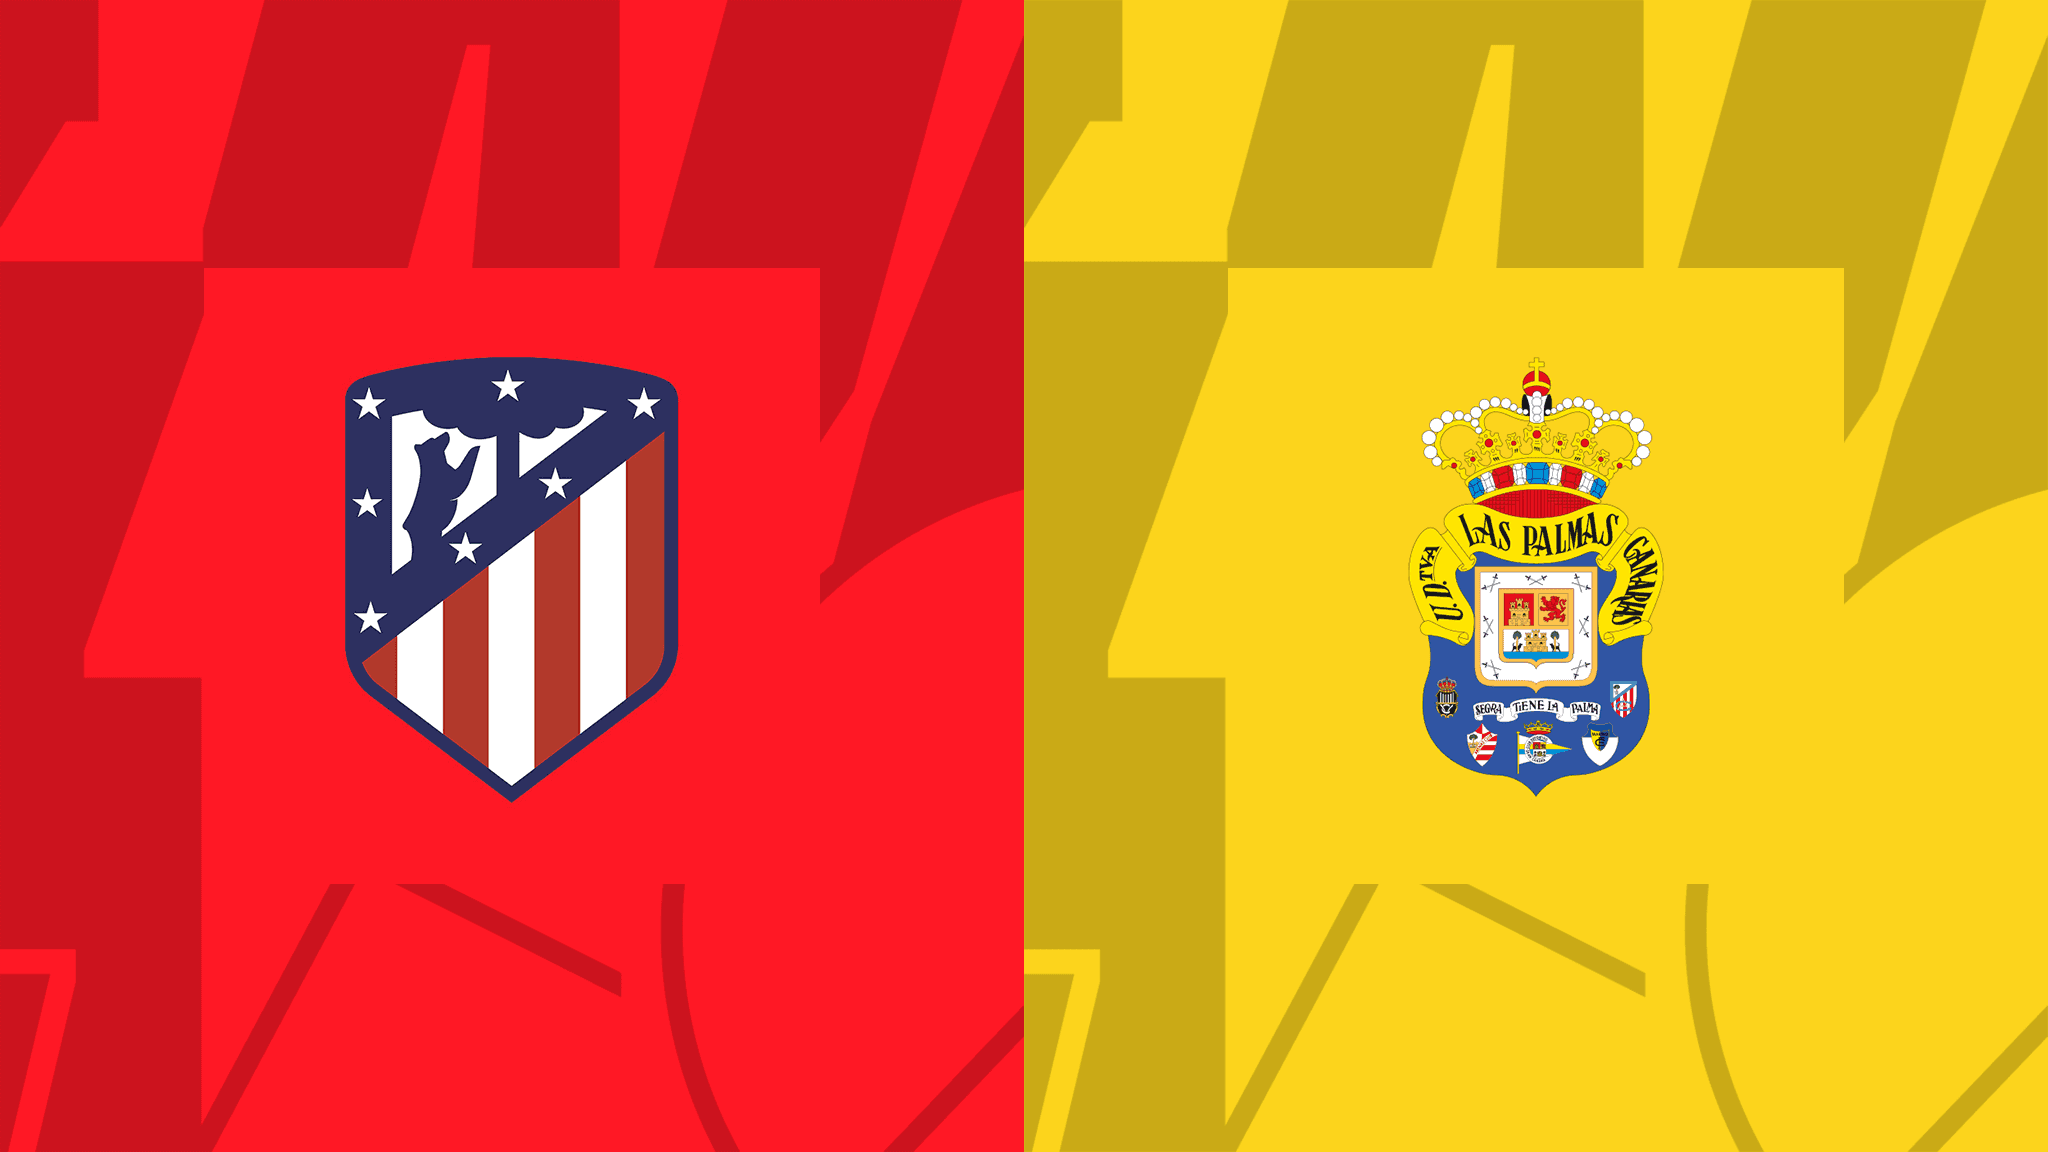 Prognóstico Atlético de Madrid vs Las Palmas